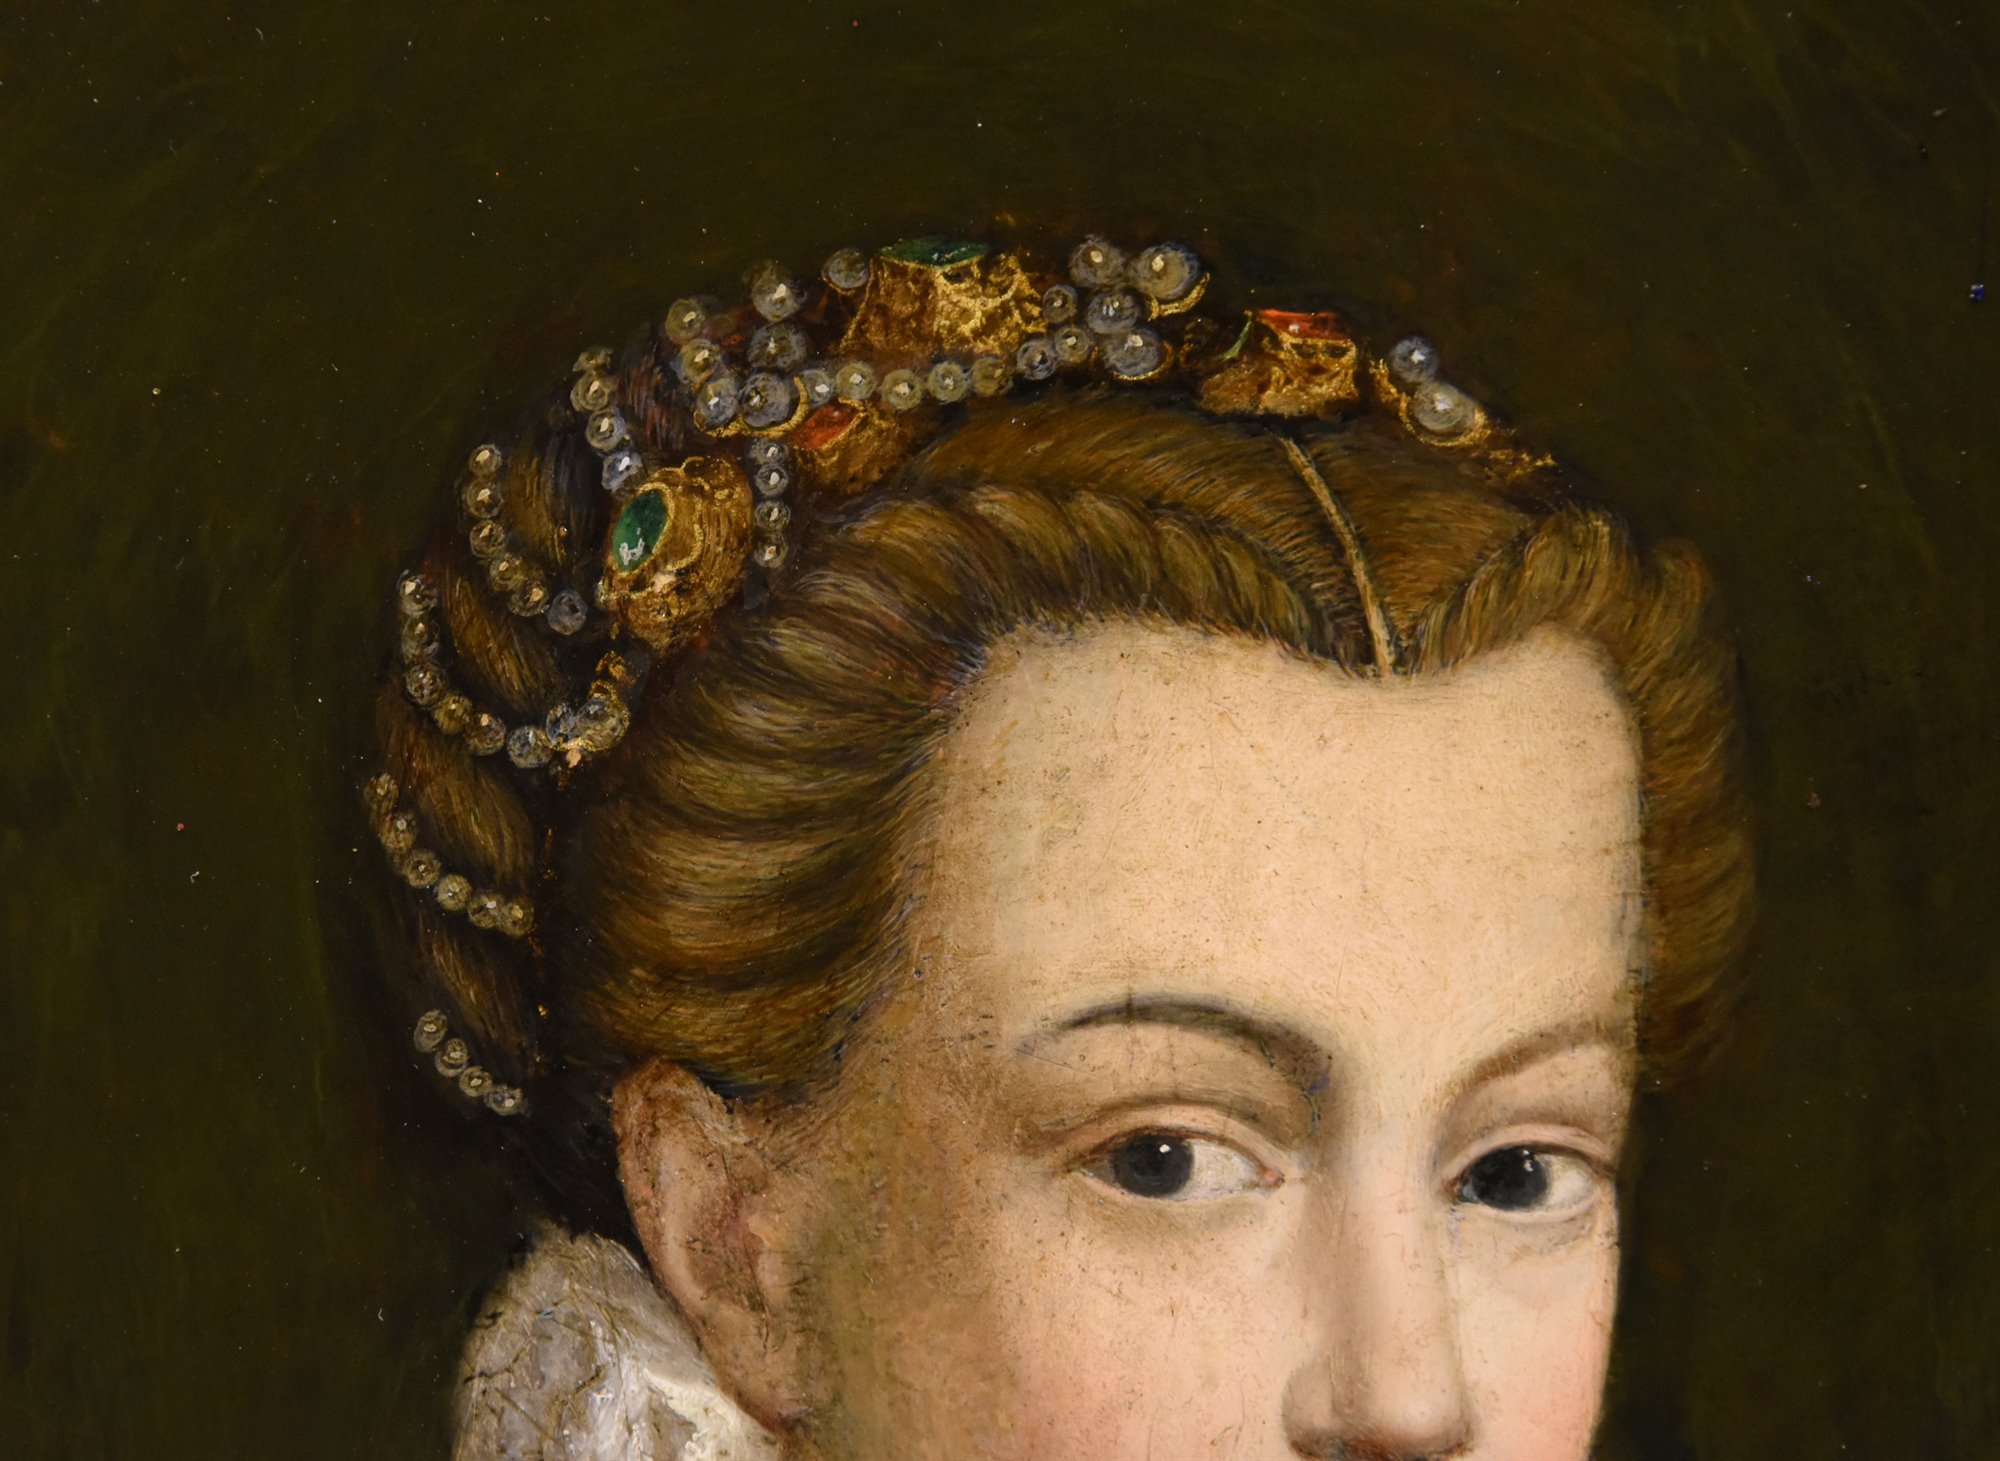 Ritratto di Carlo IX e di Elisabetta d'Asburgo, re e regina di Francia